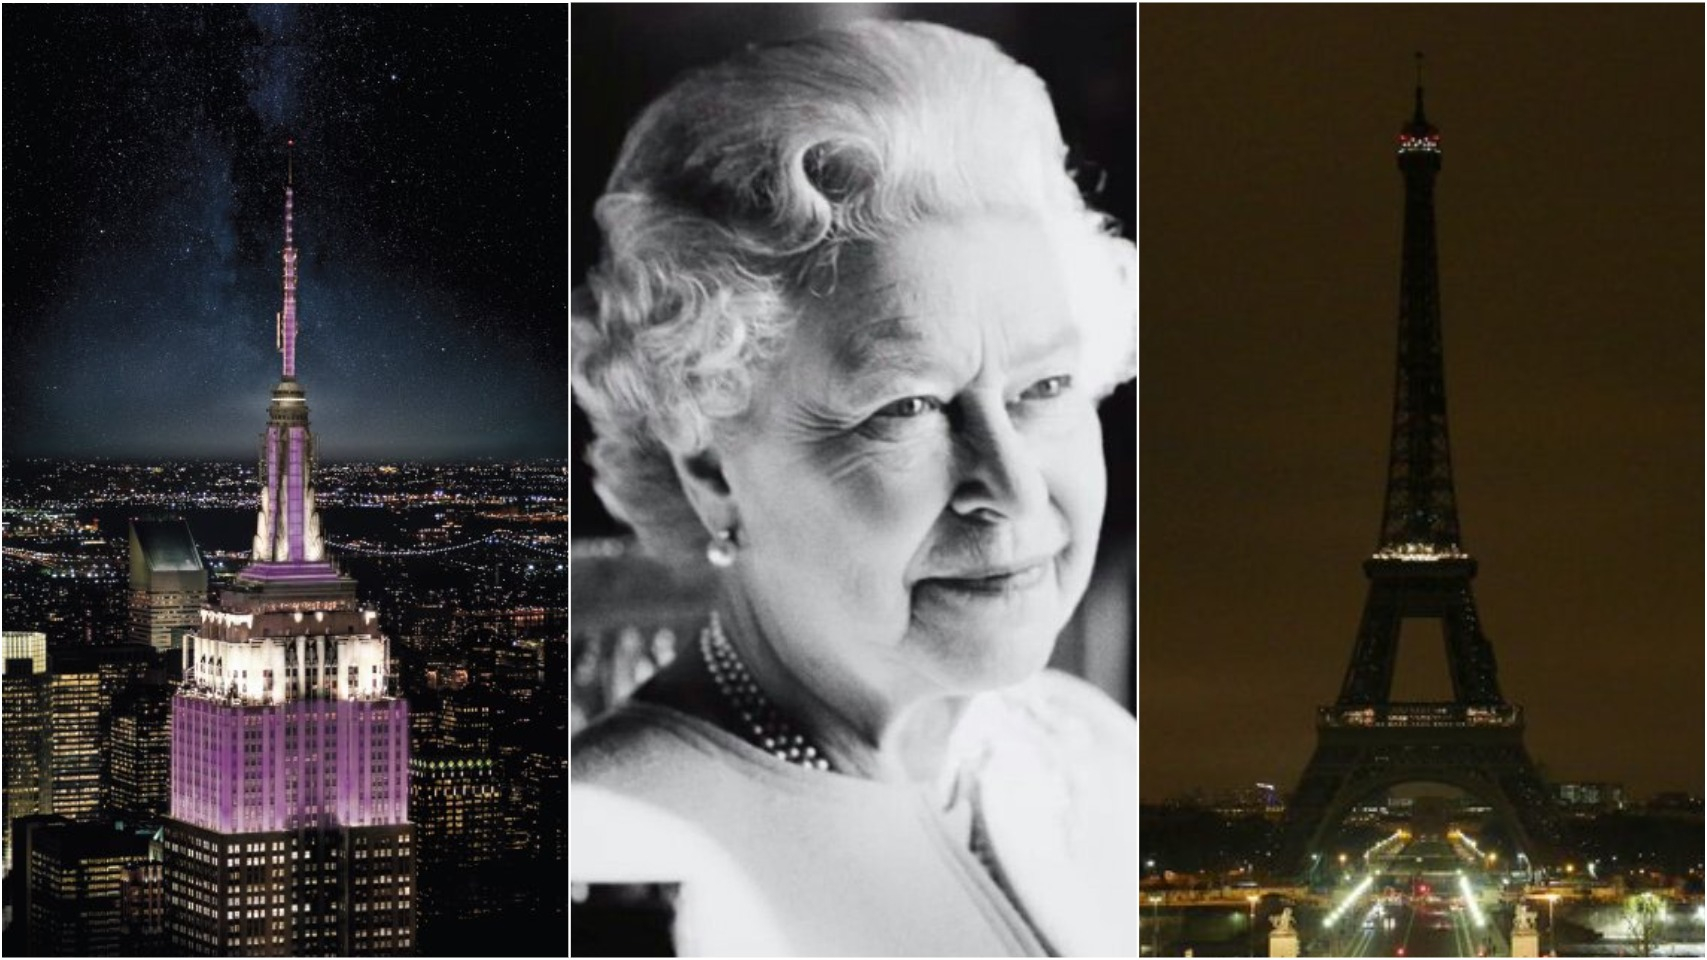 Королева Єлизавета II померла 8 вересня – визначні пам'ятки світу вшанували пам'ять Її Величності